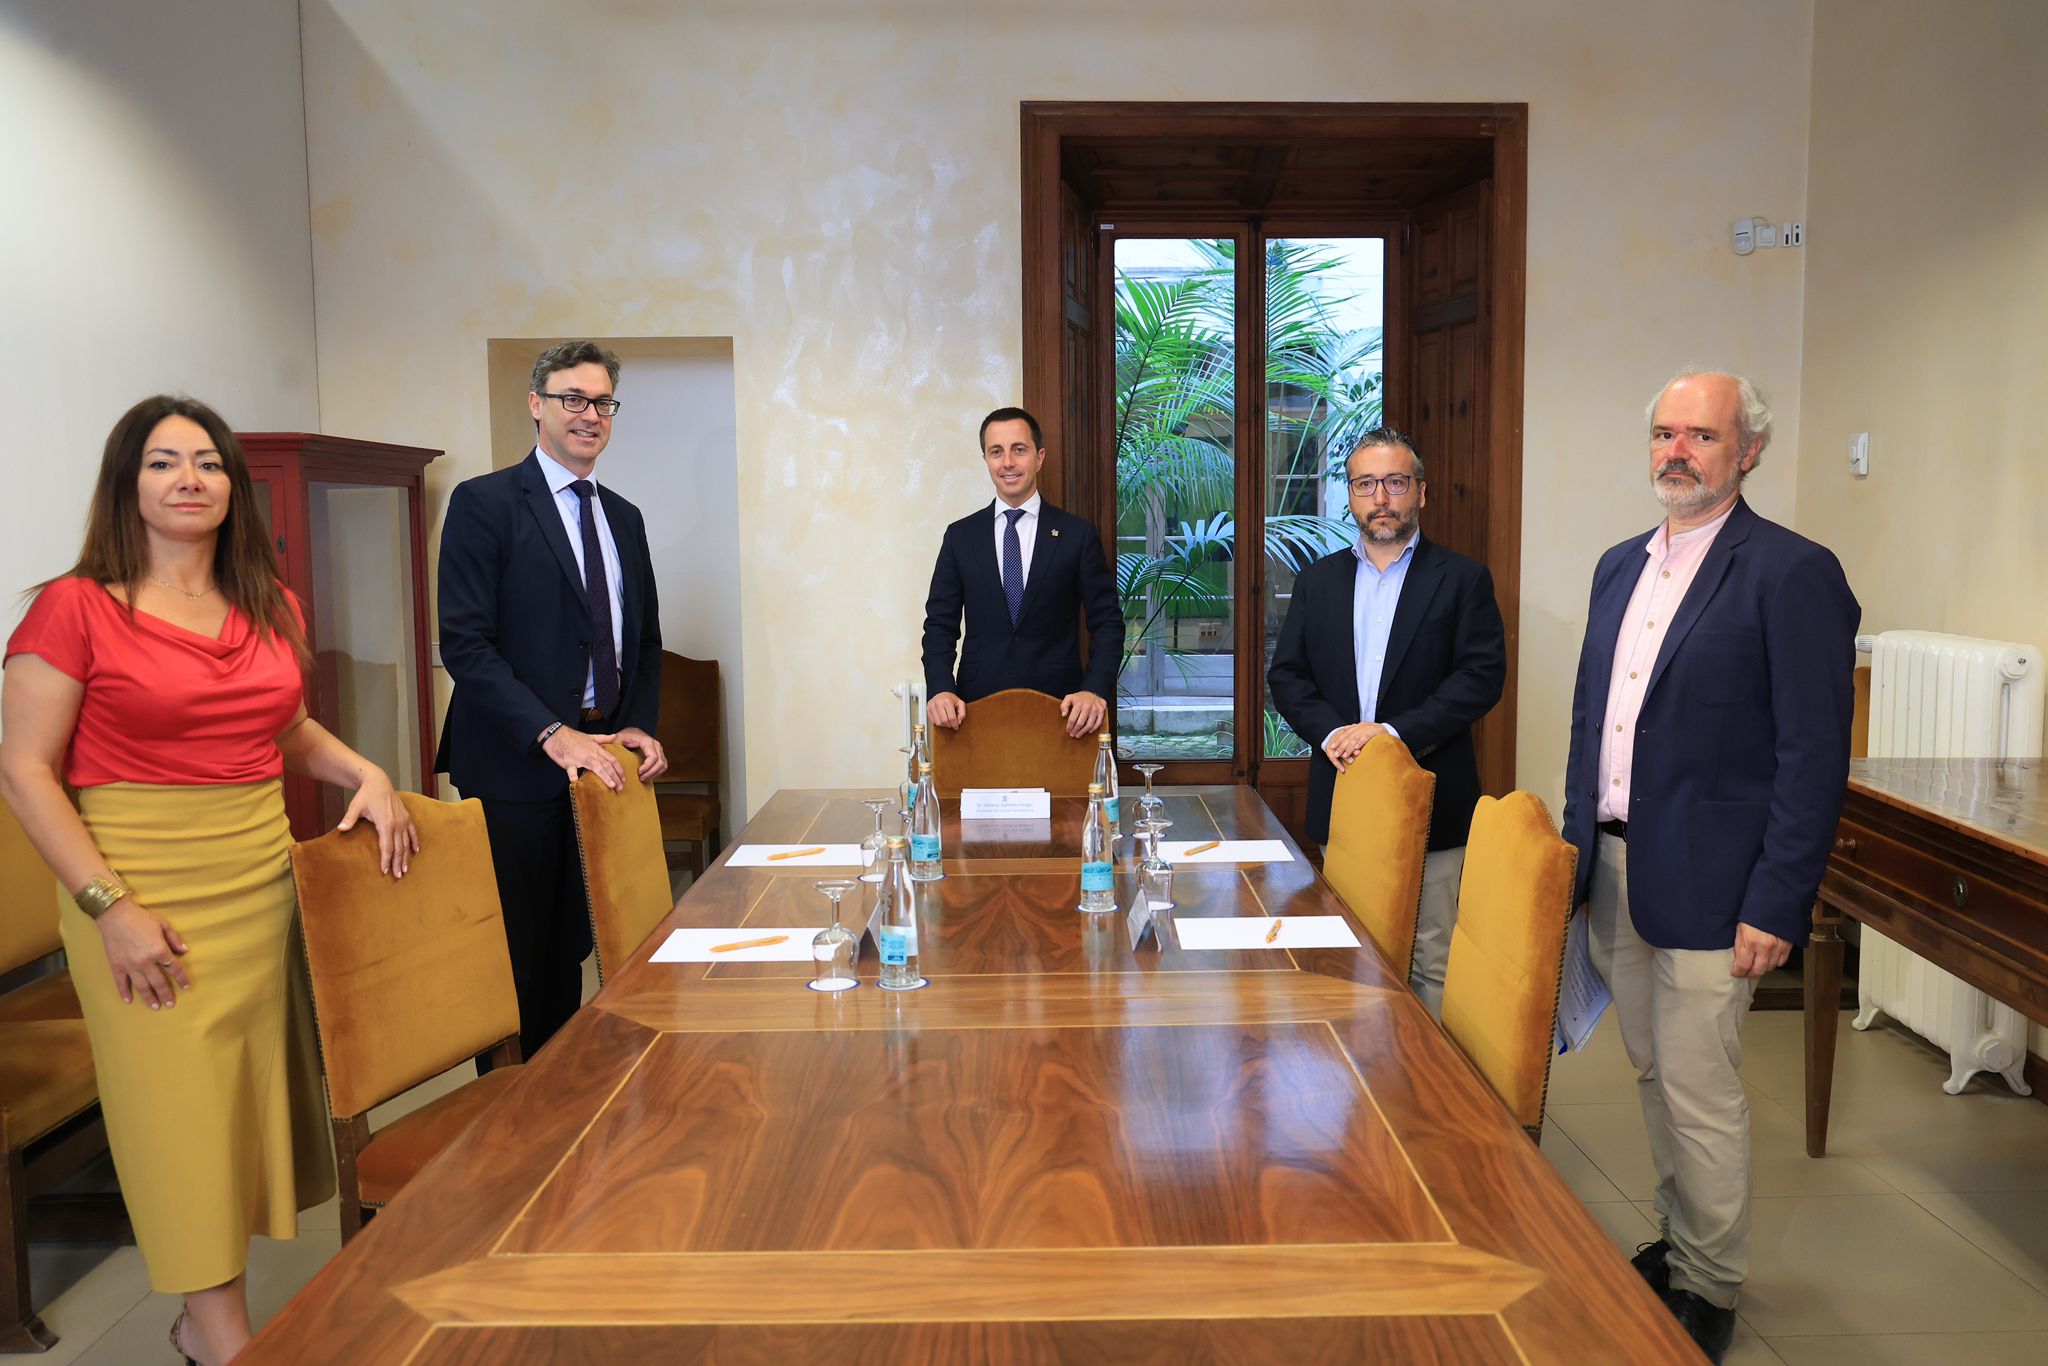 Reunión entre el presidente del Consell de Mallorca, Llorenç Galmés, y el vicepresidente y consejero de Hacienda del Govern de les Illes Balears, Antoni Costa.